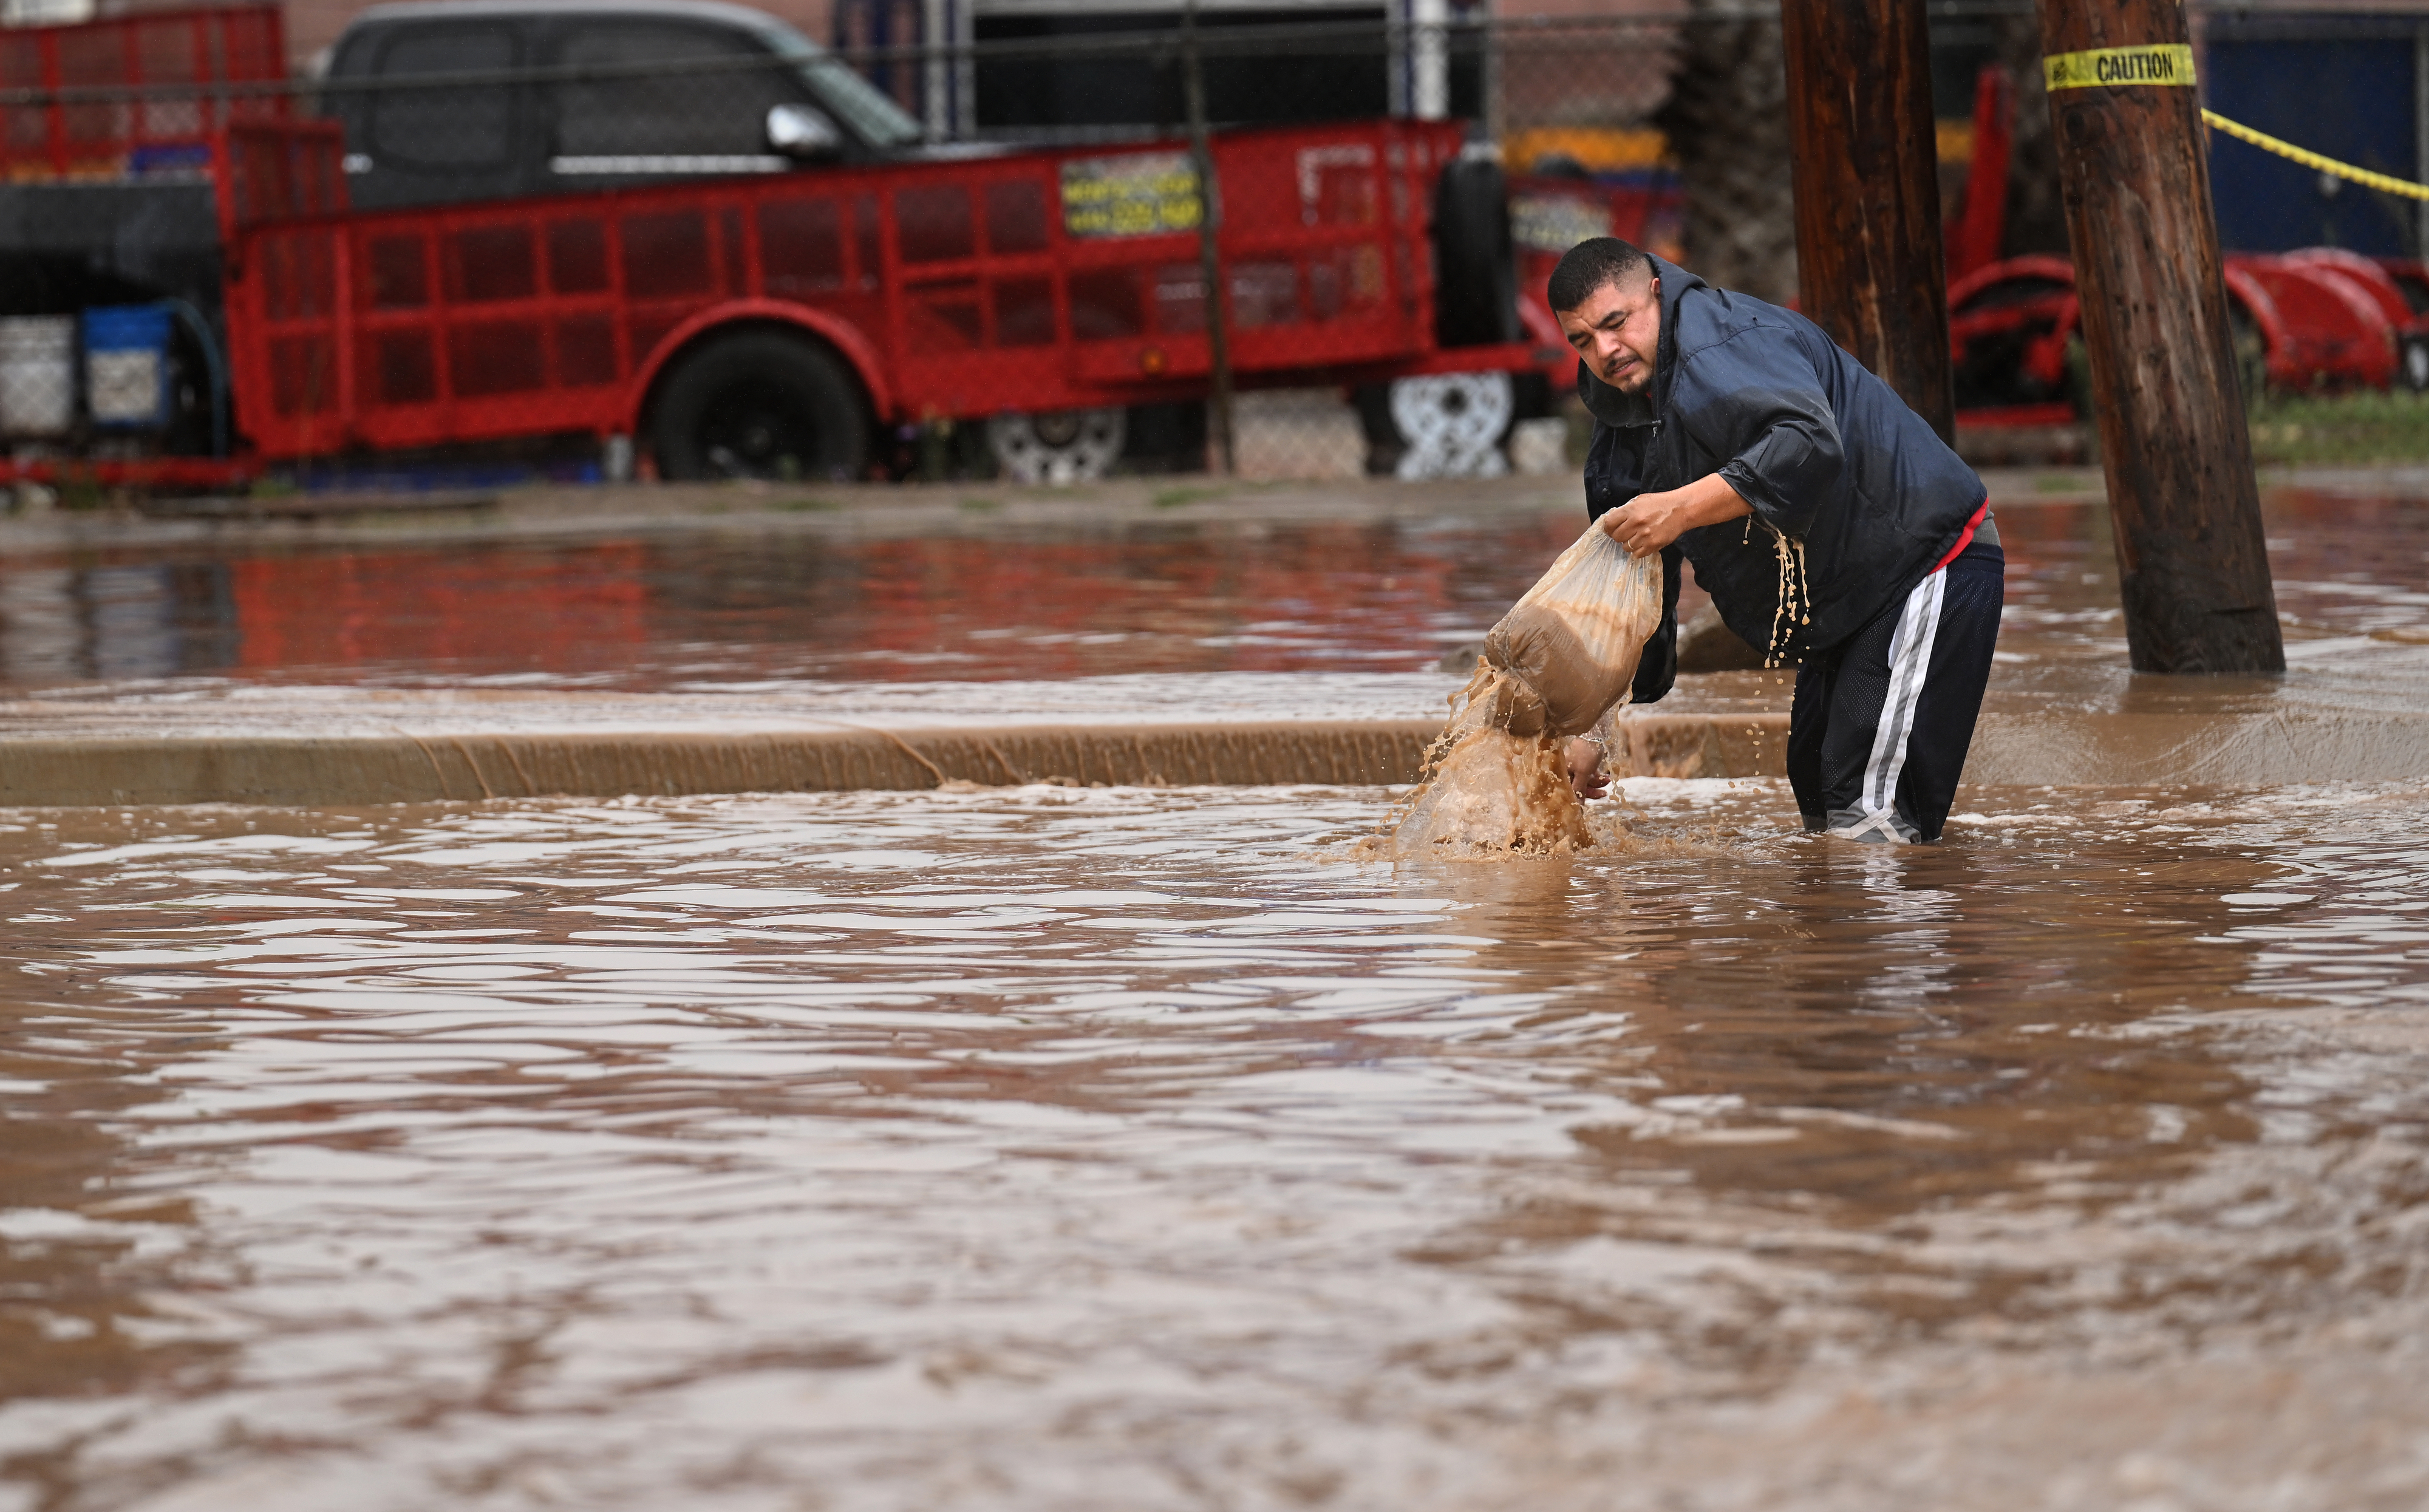 A man tries to clear a drain as Tropical Storm Hilary makes landfall in Ensenada, Mexico